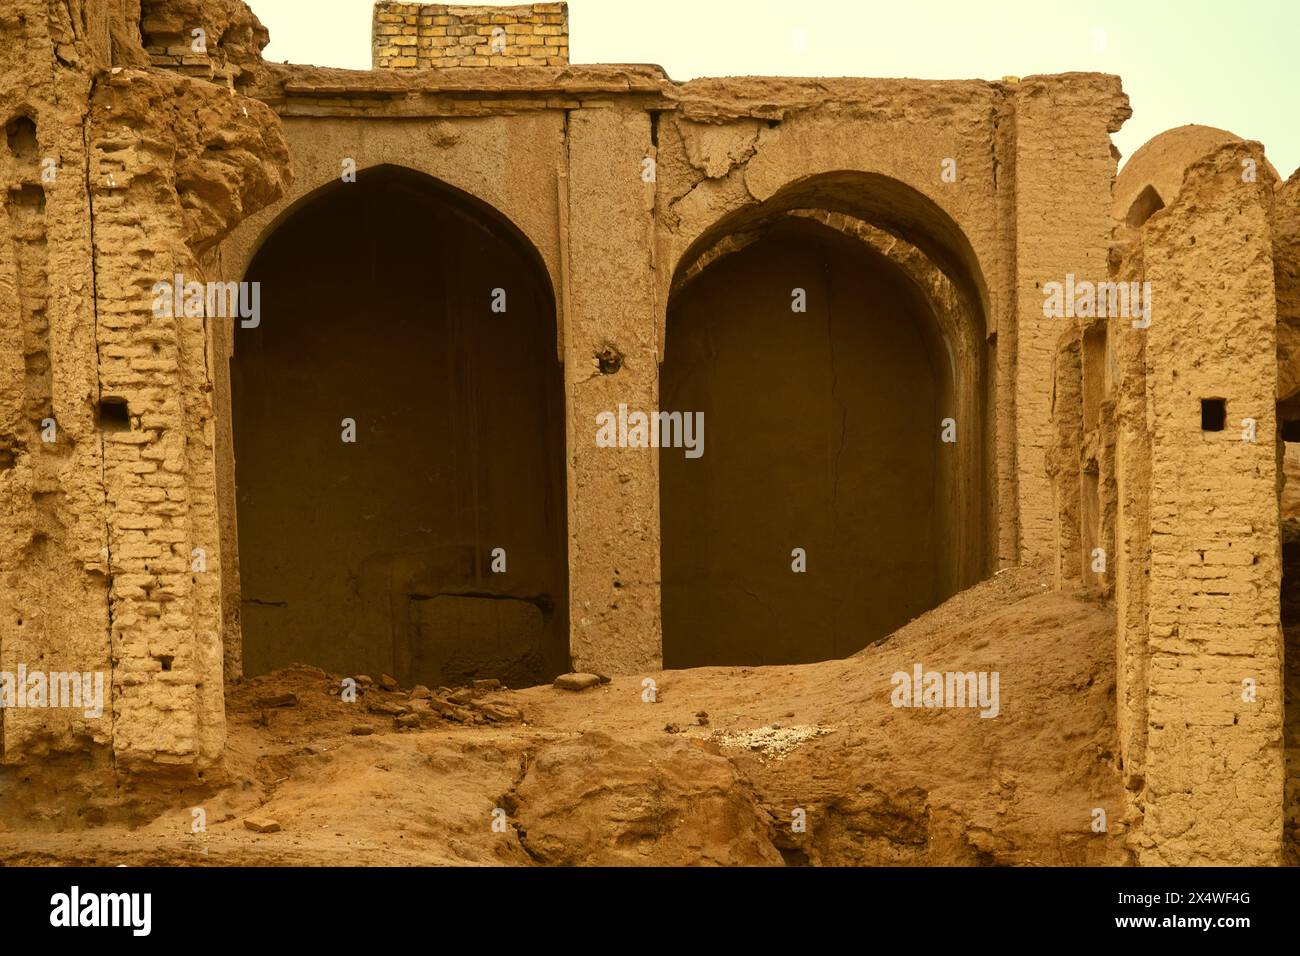 Yazd, Iran - 28. Dezember 2022: Orientalische Architektur. Ein altes Gebäude, eine mittelalterliche Stadt, ziegelsteingebäude sind eingestürzt Stockfoto